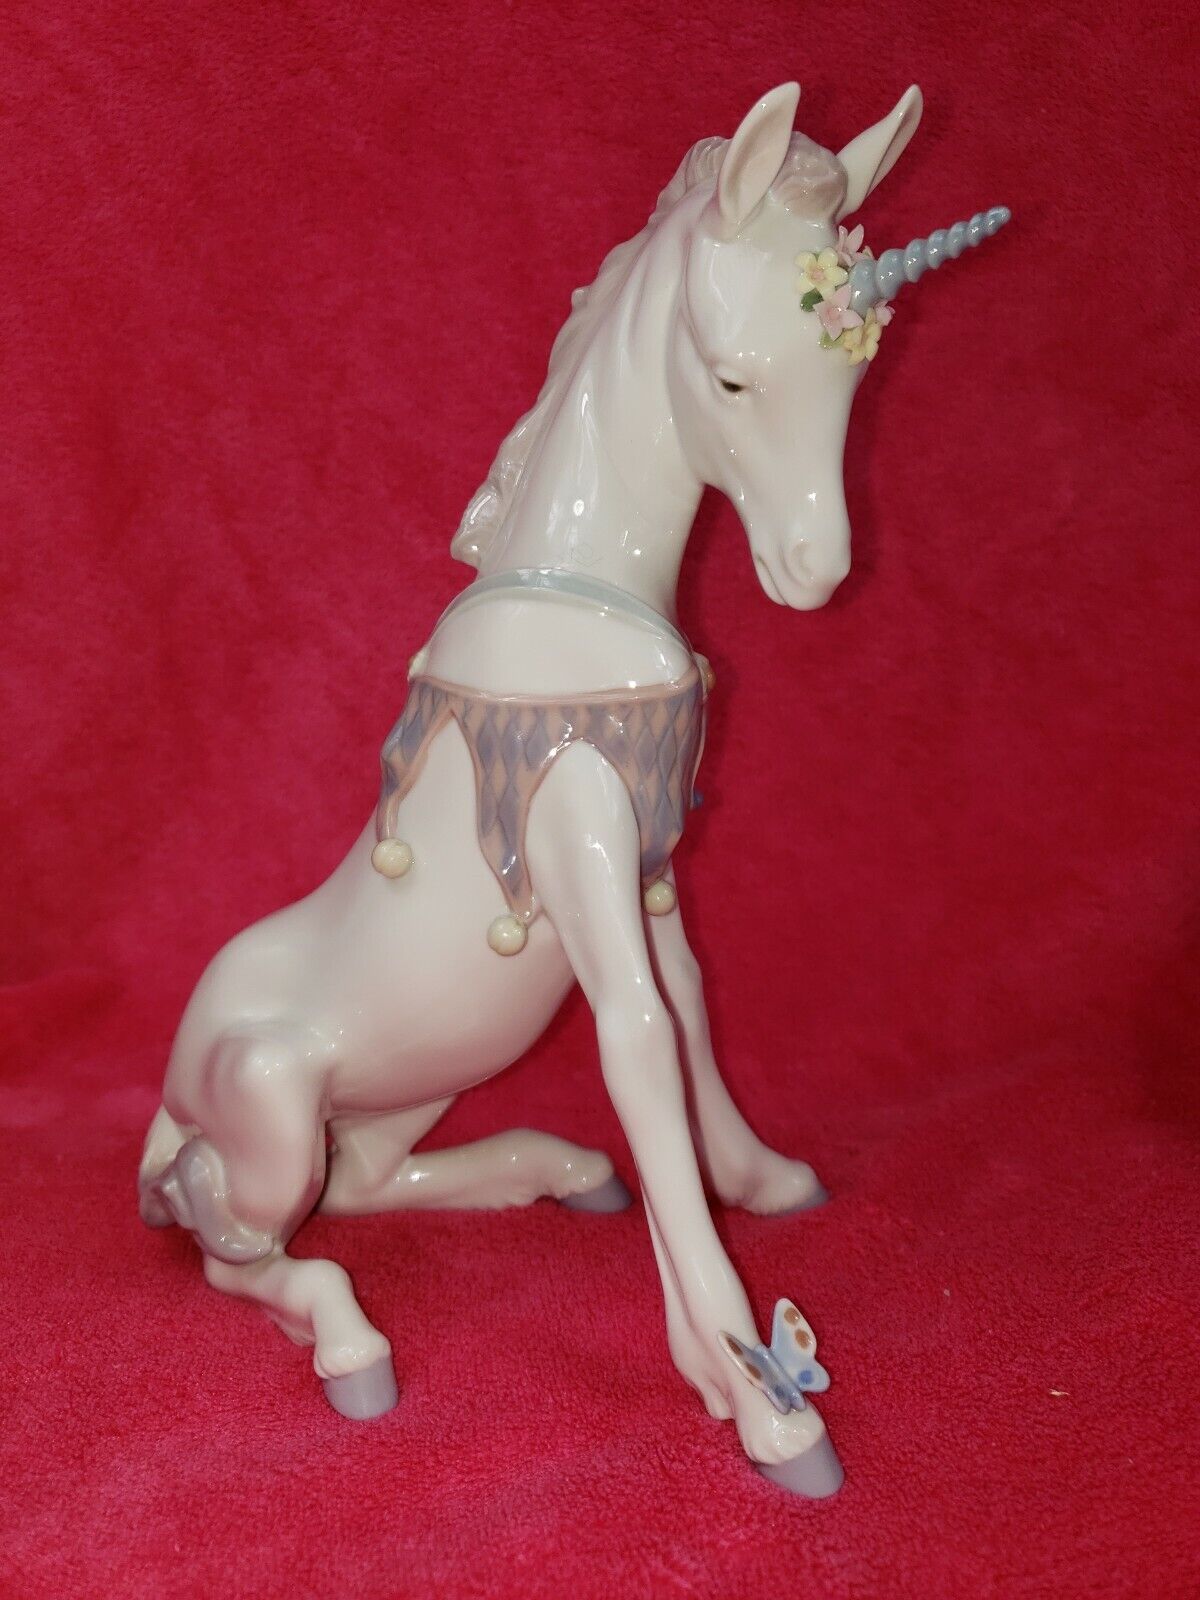 Lladro Unicorn # 5880 great condition - NO box